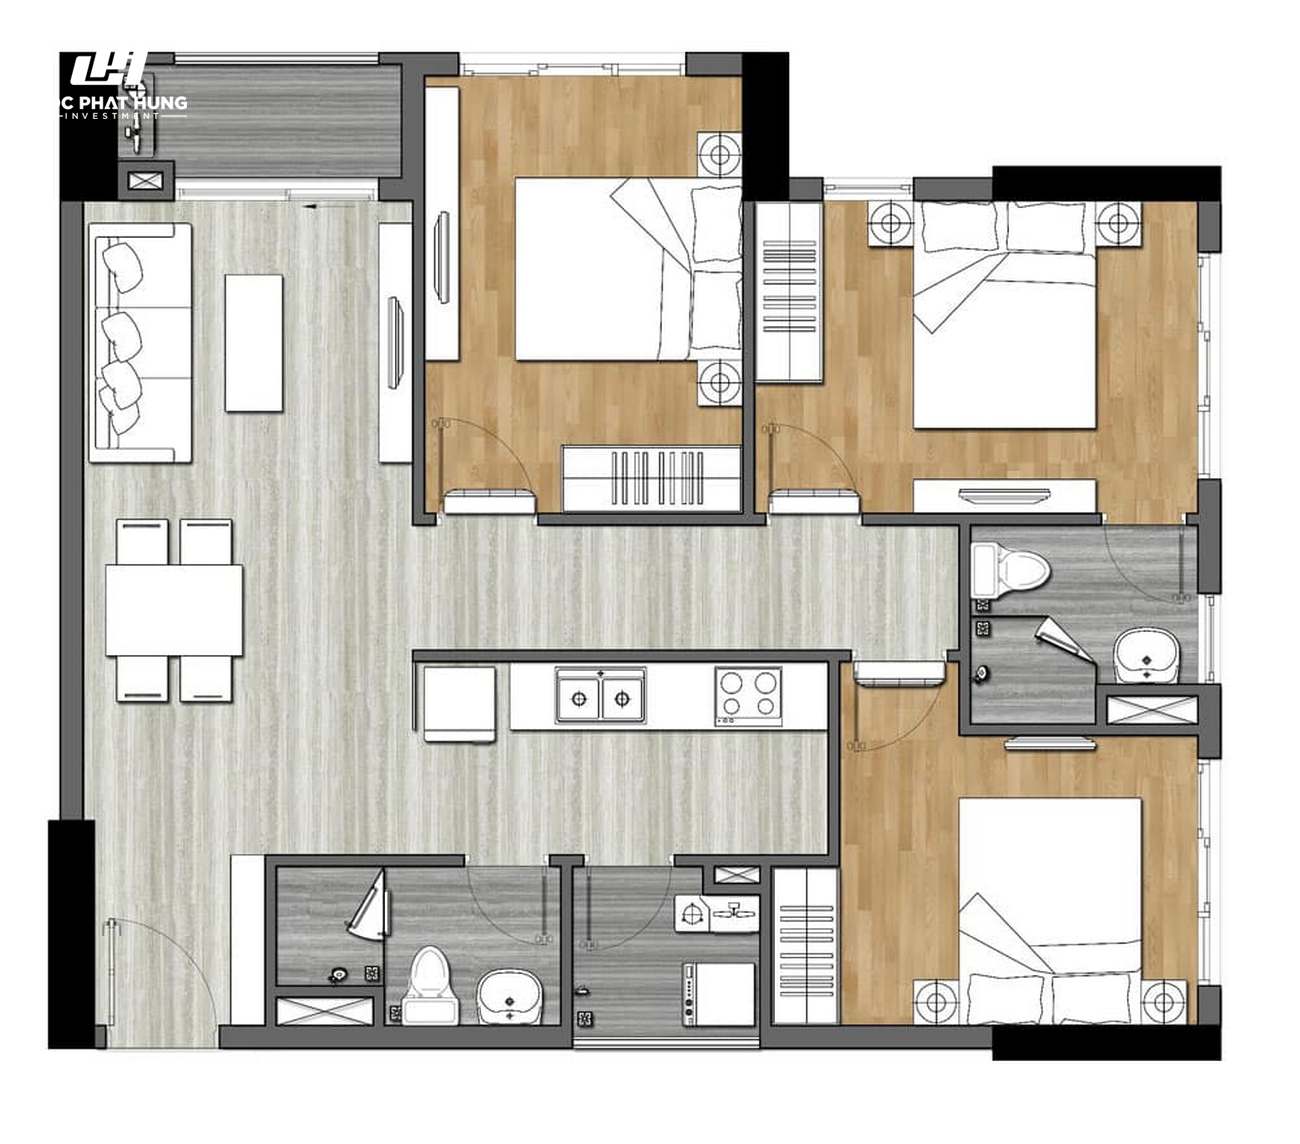 Thiết kế dự án căn hộ chung cư New Galaxy Dĩ An Bình Dương Đường Đường Thống Nhất chủ đầu tư Hưng Thịnh - Loại 3 phòng ngủ